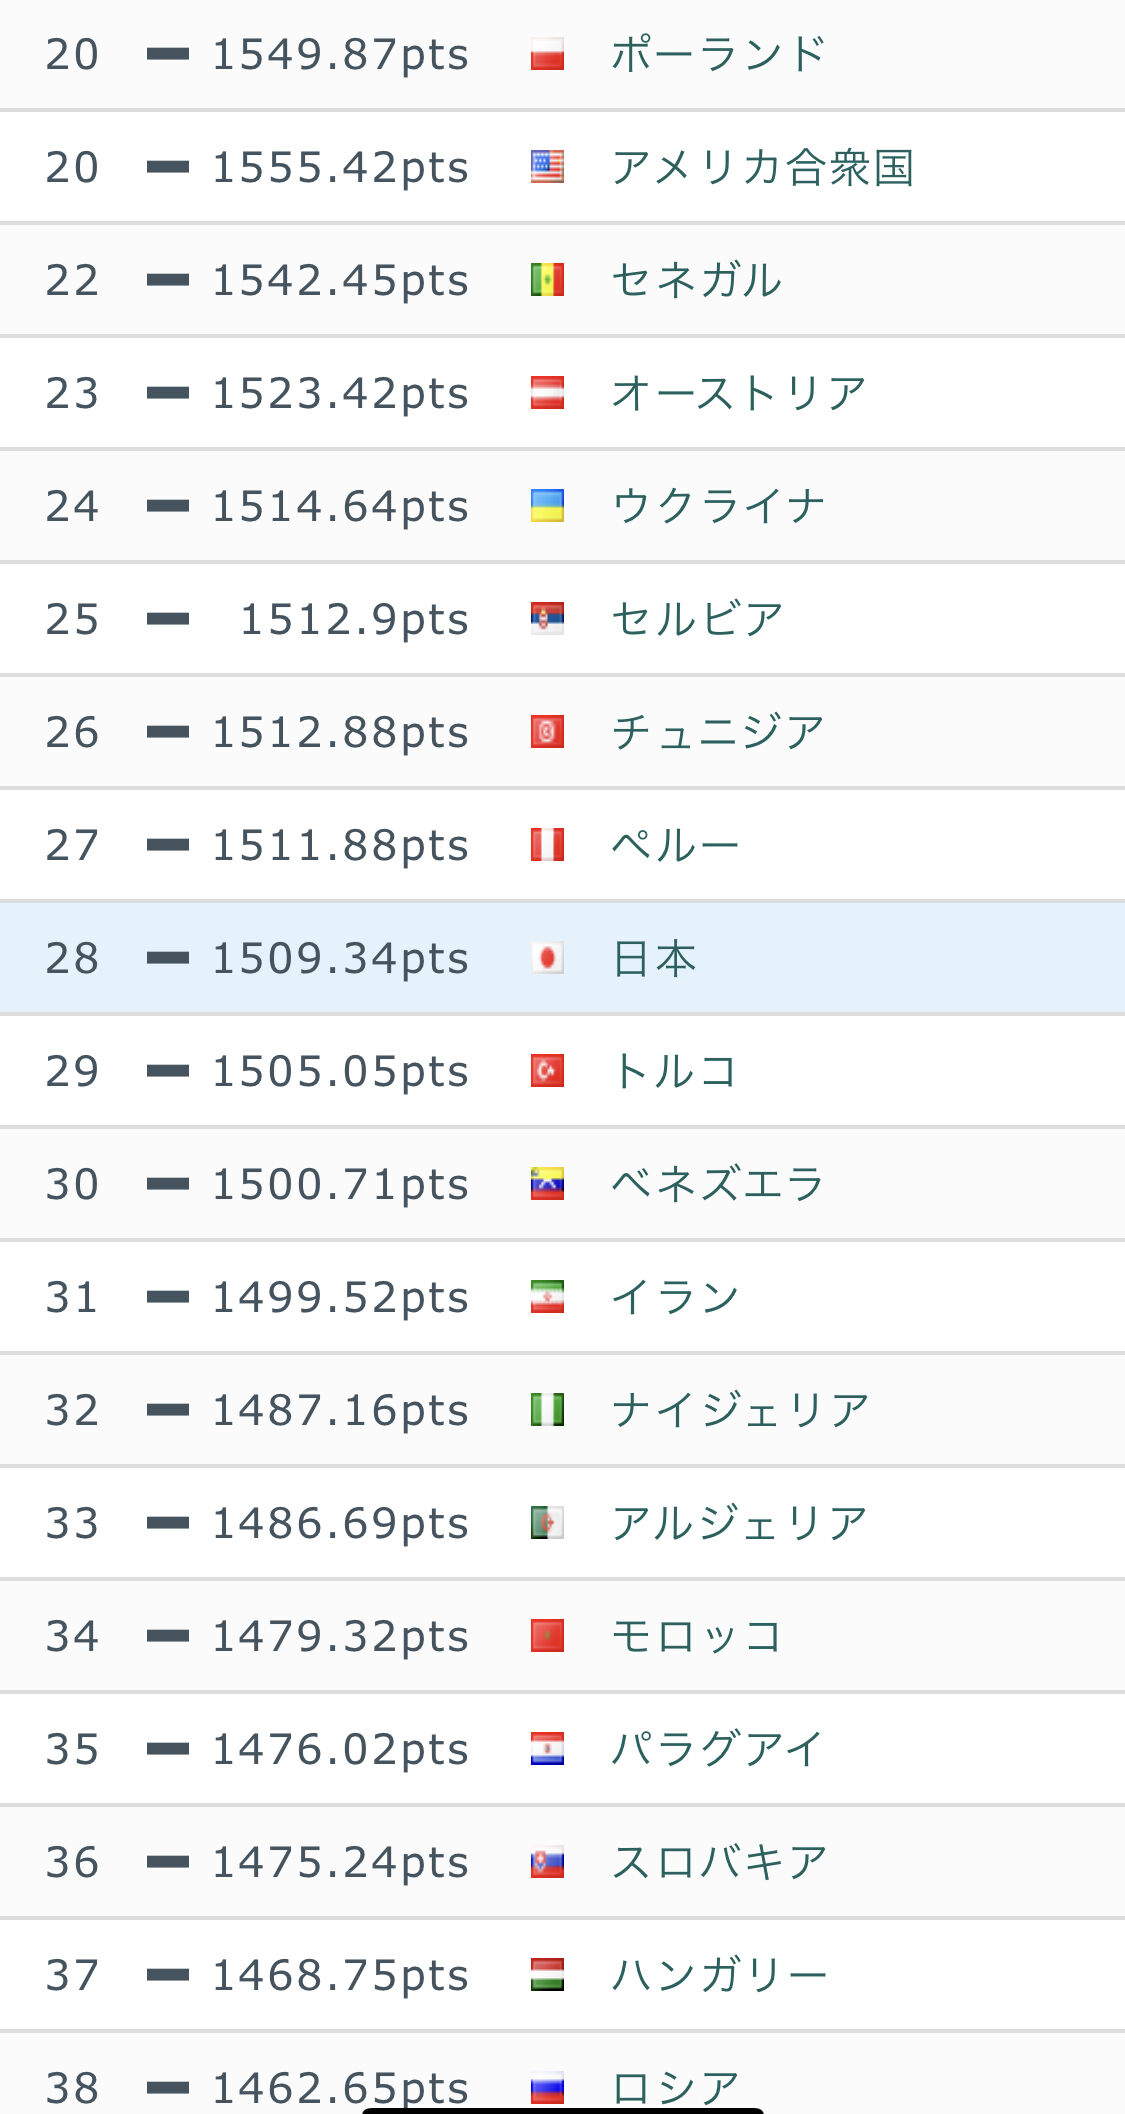 吉報 つぇぇぇ サッカー日本代表 Fifaランク23位へ Jリーグまるわかり まとめkickoff